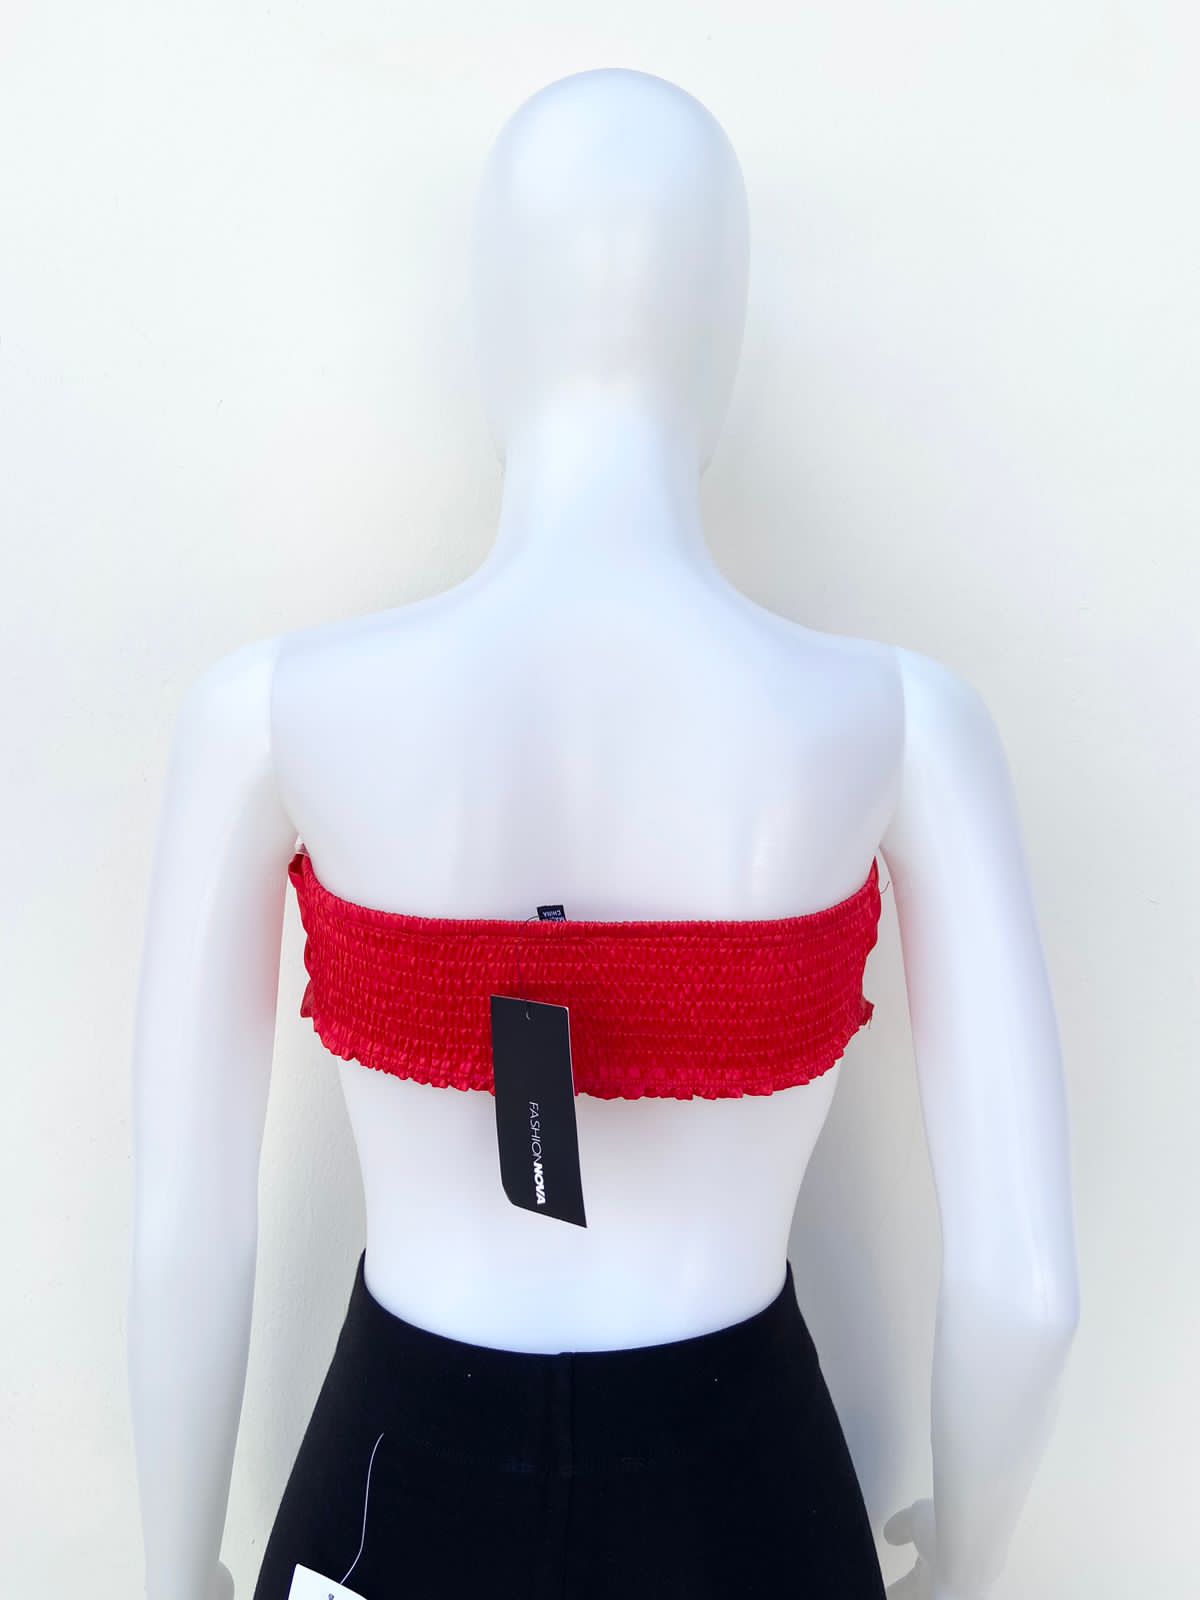 Top FASHION NOVA original, estilo pañuelo rojo, strapless.